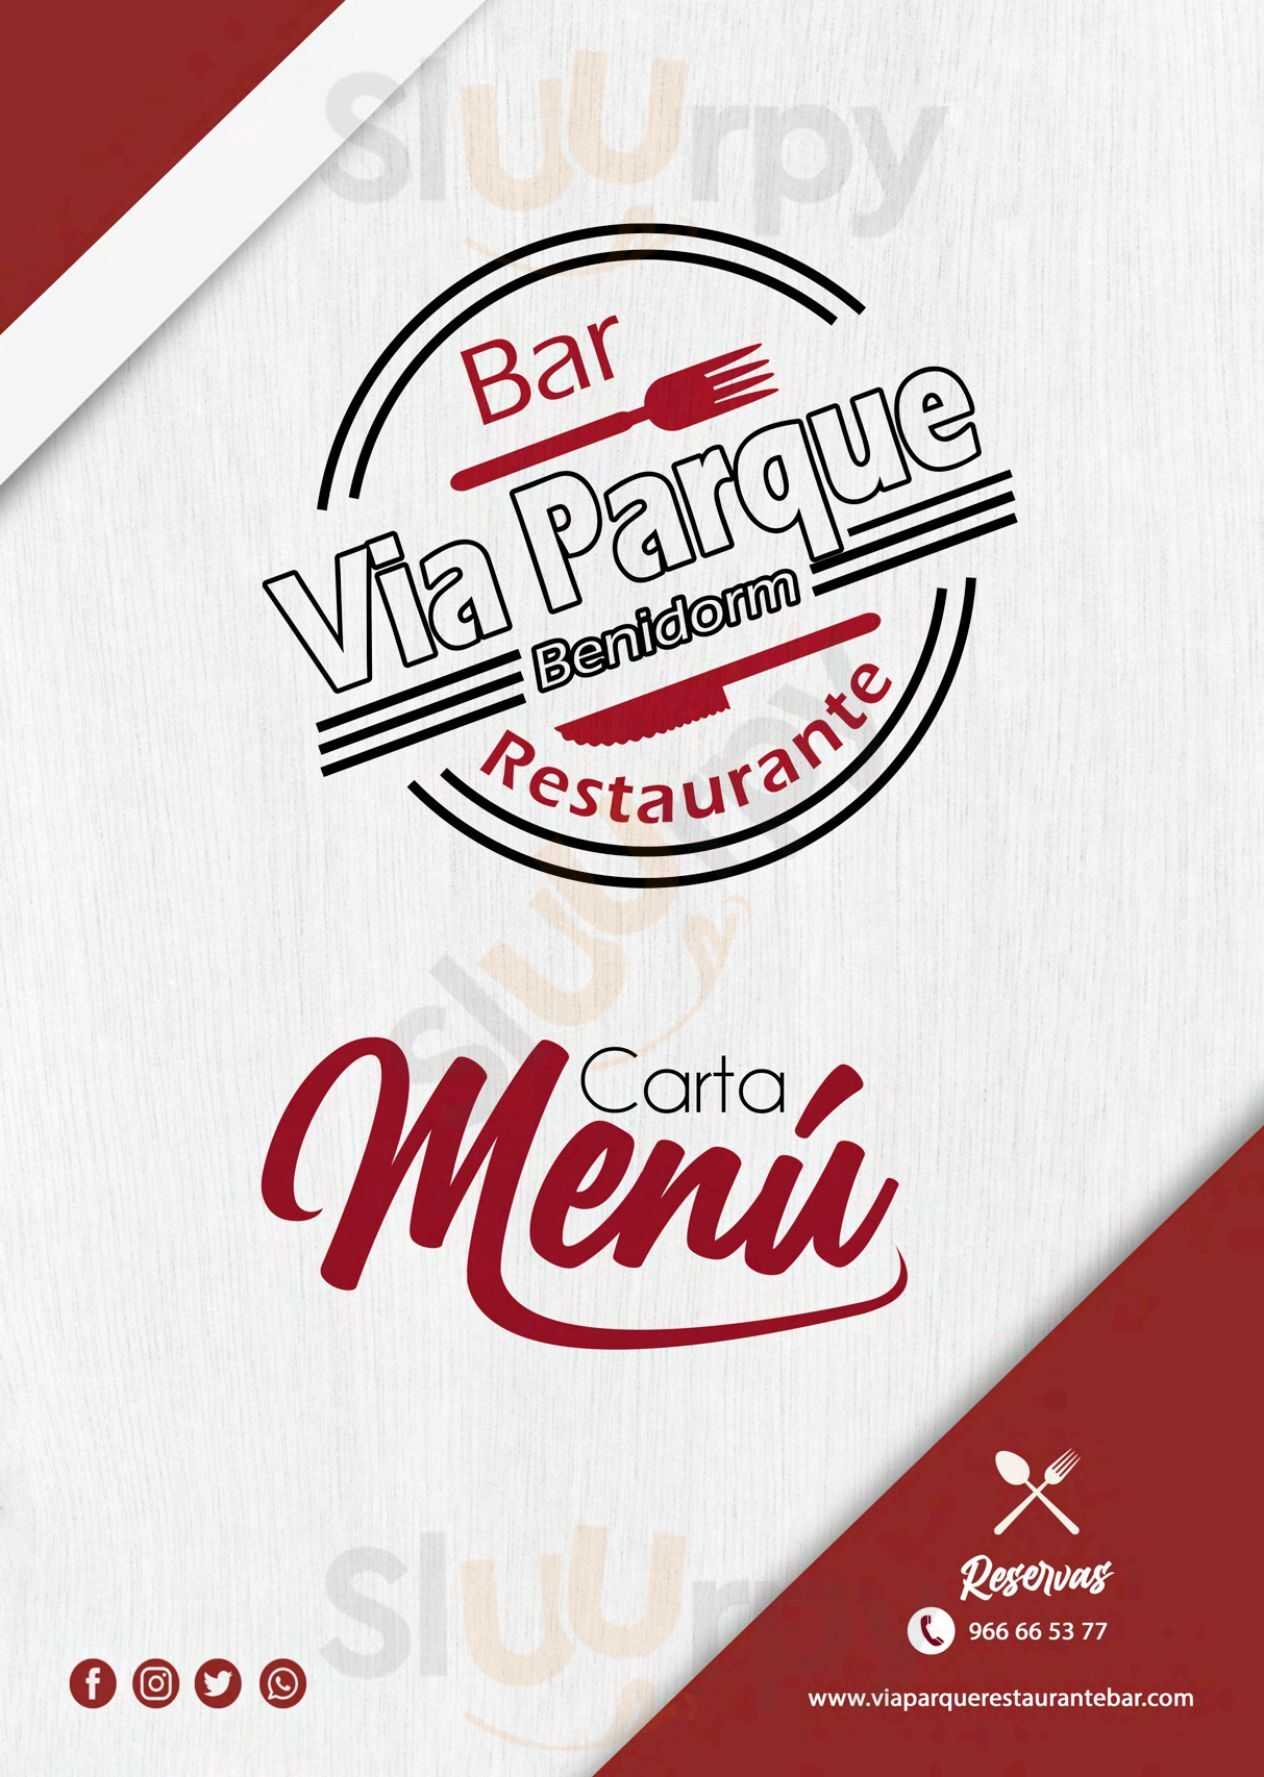 Via Parque Restaurante Bar Benidorm Menu - 1